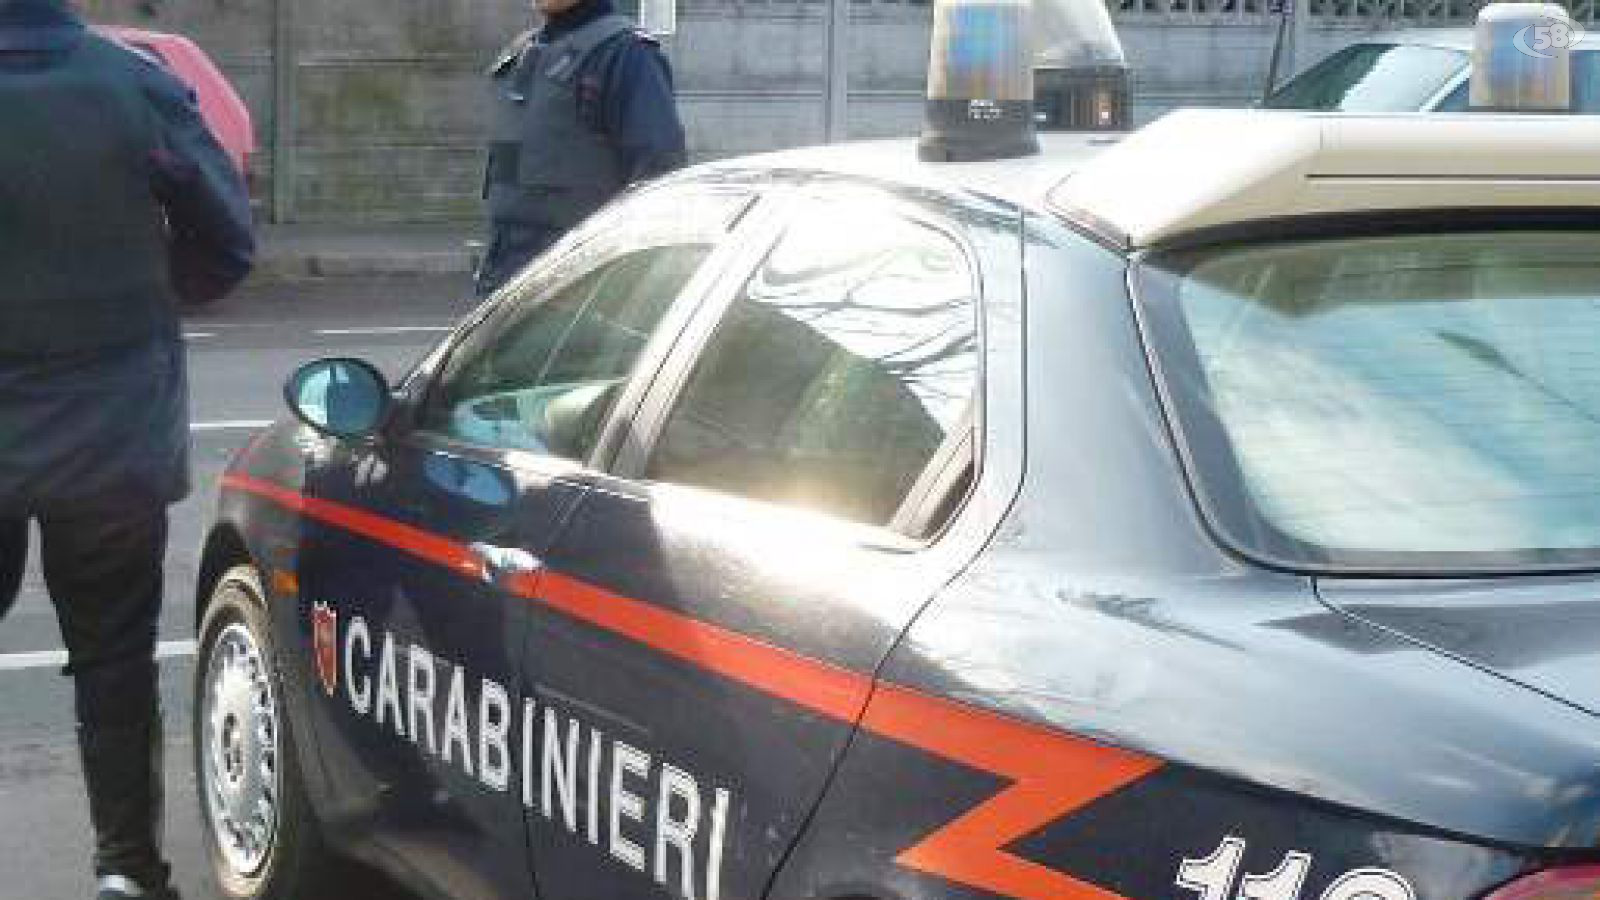 carabinieri ariano